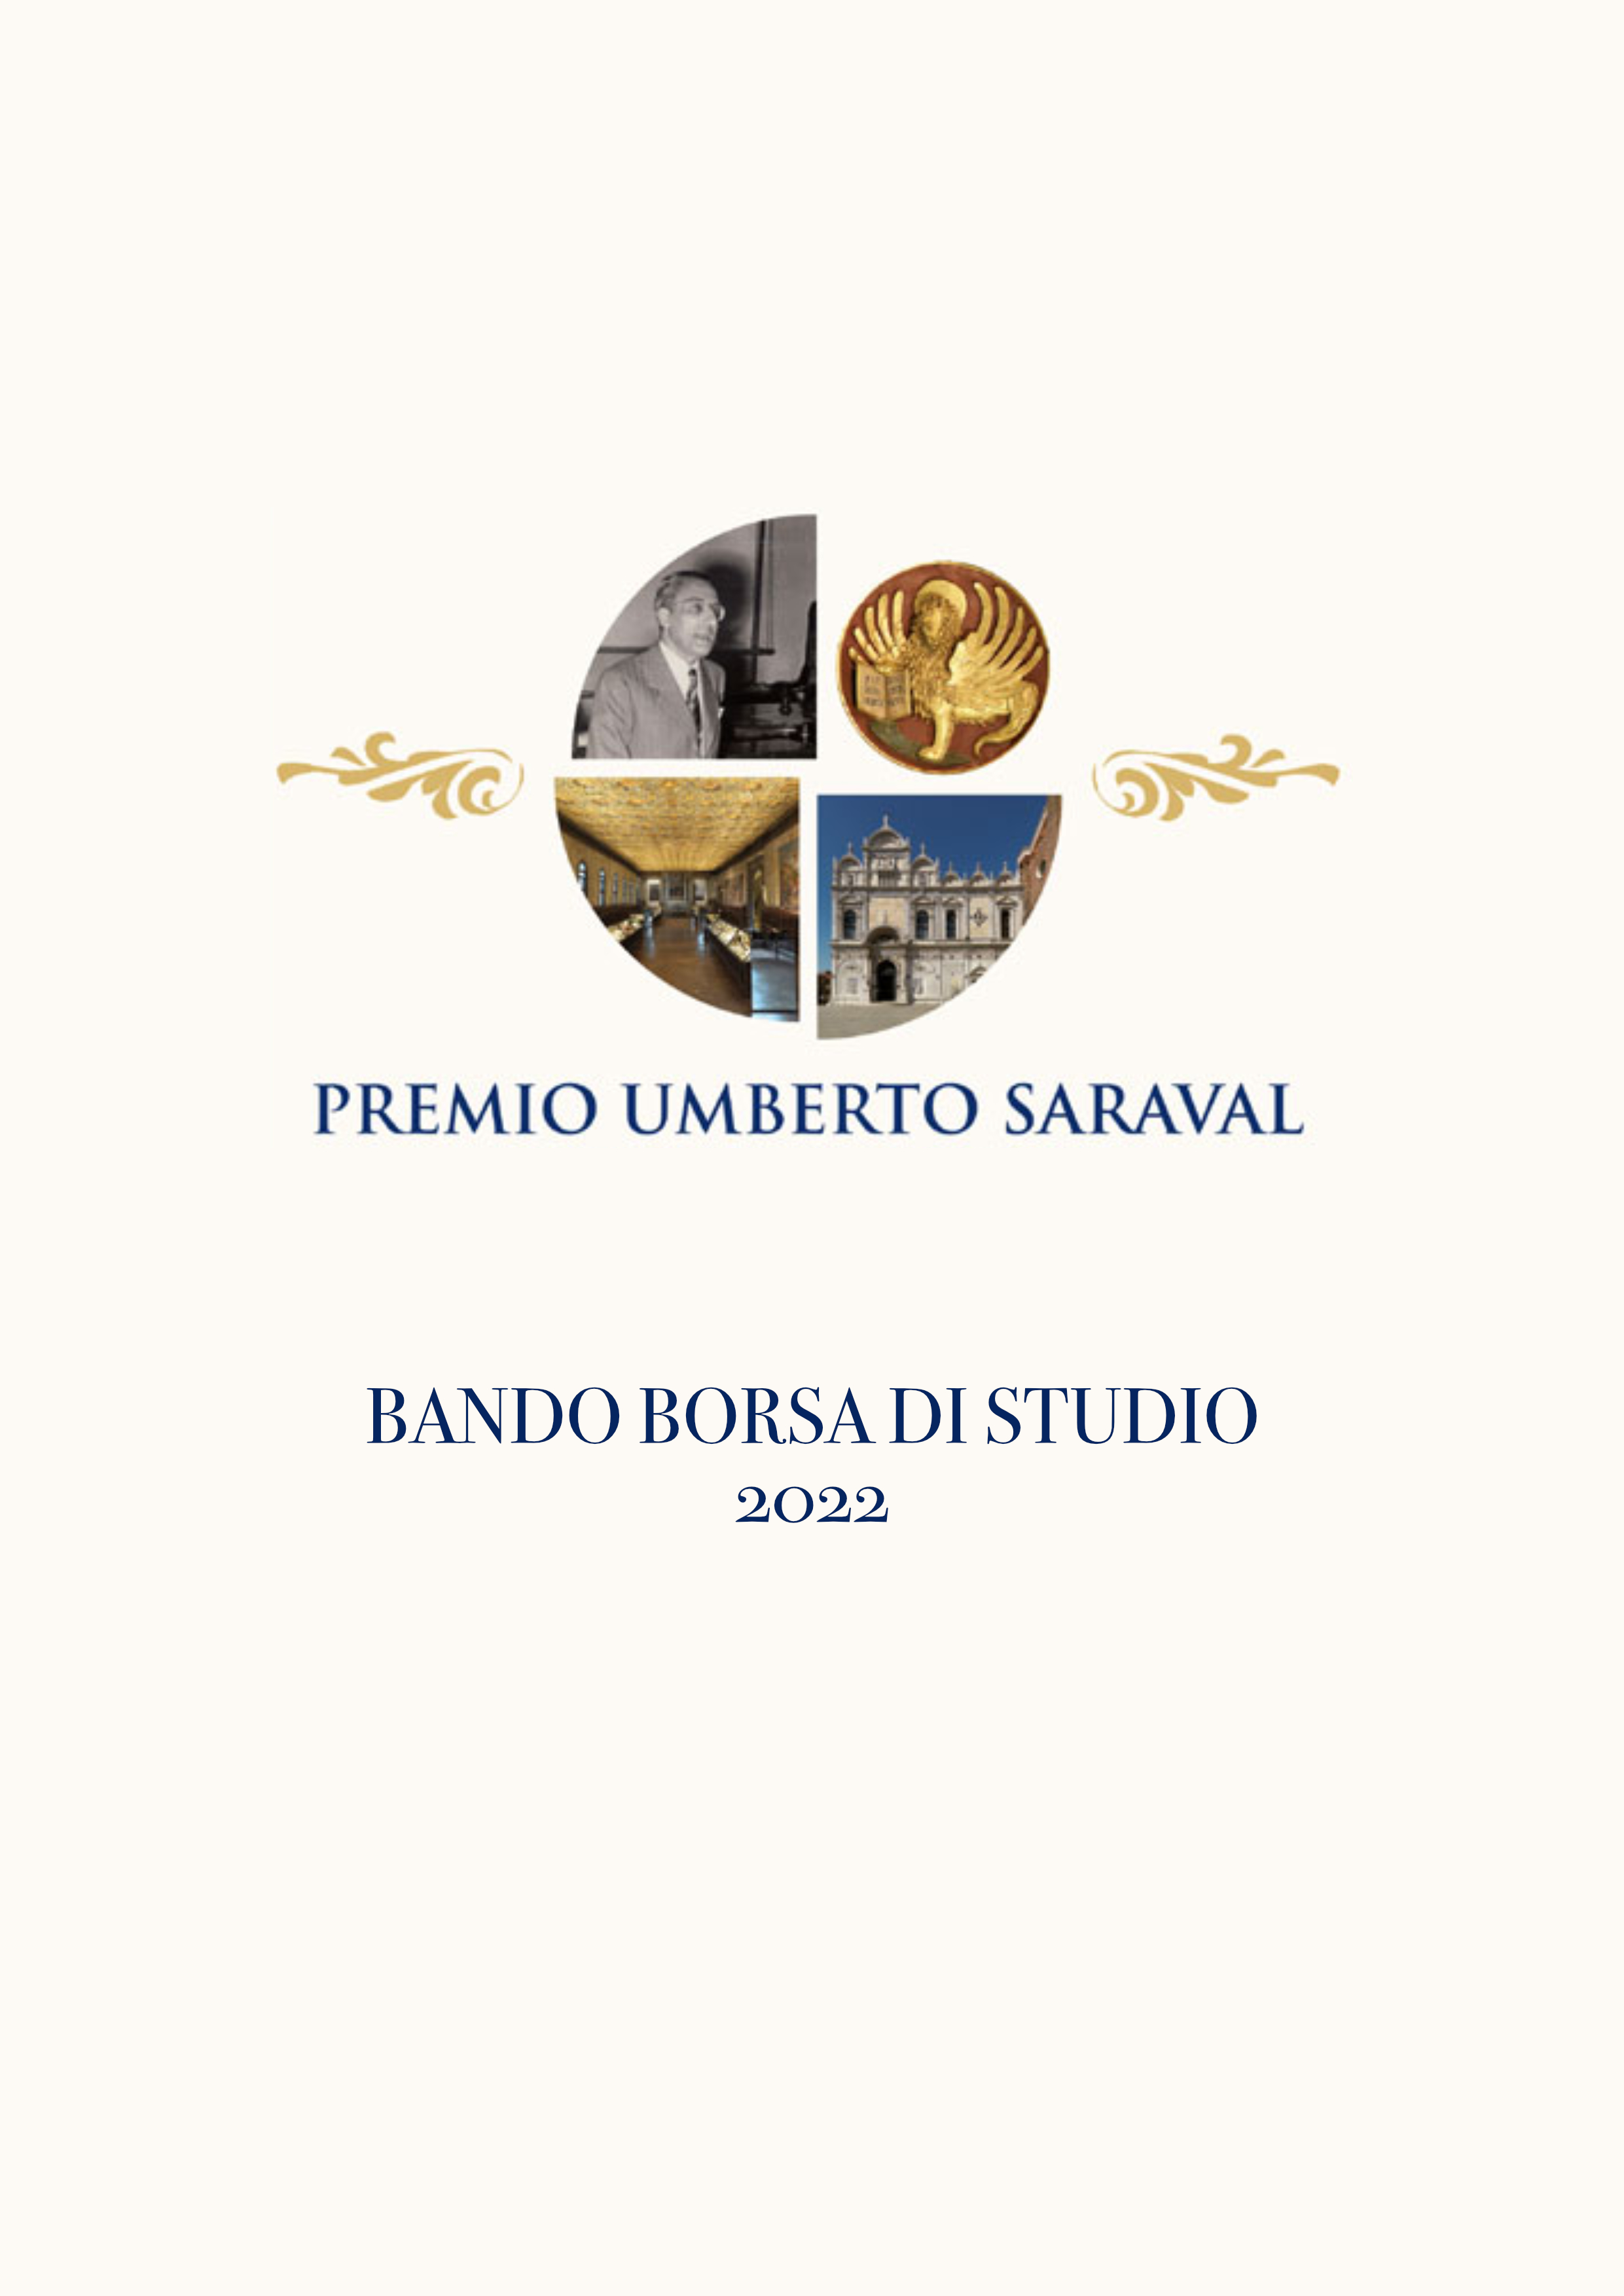 BANDO BORSA DI STUDIO – PREMIO UMBERTO SARAVAL ODONTOIATRIA - CHIRURGIA MAXILLOFACCIALE